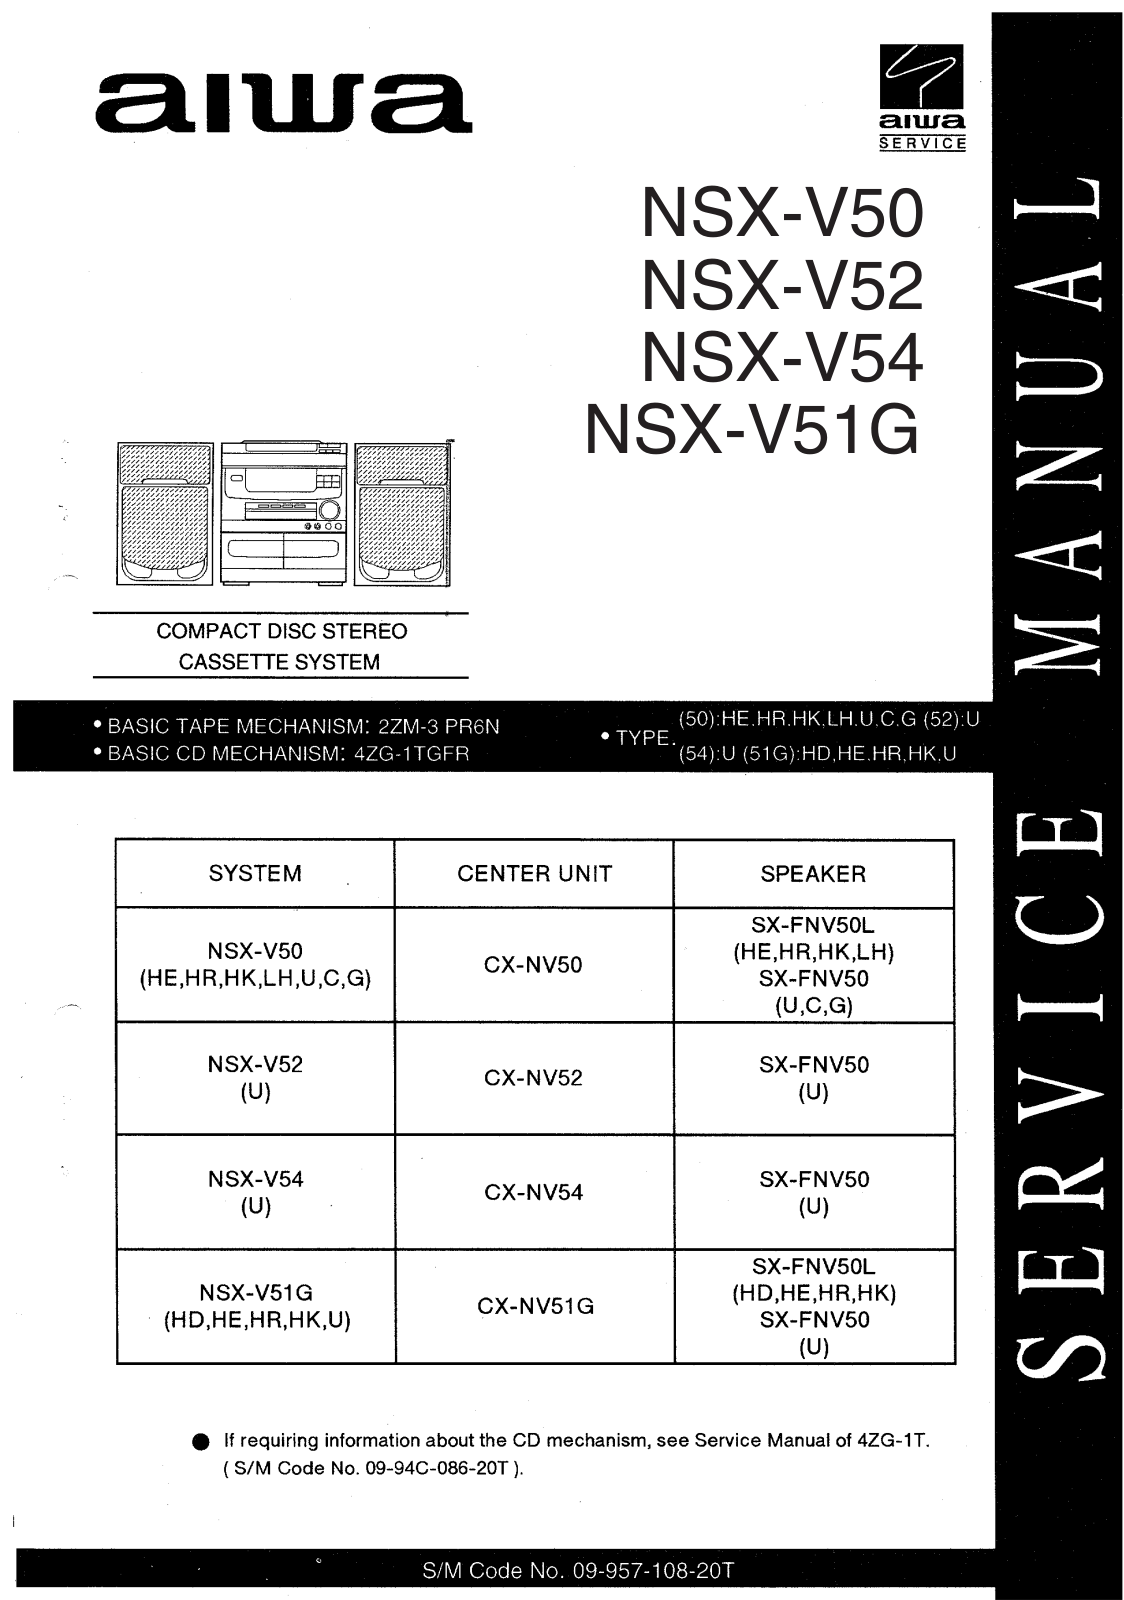 Aiwa NSX-V50, NSX-V52, NSX-V51G, NSX-V54 Service Manual